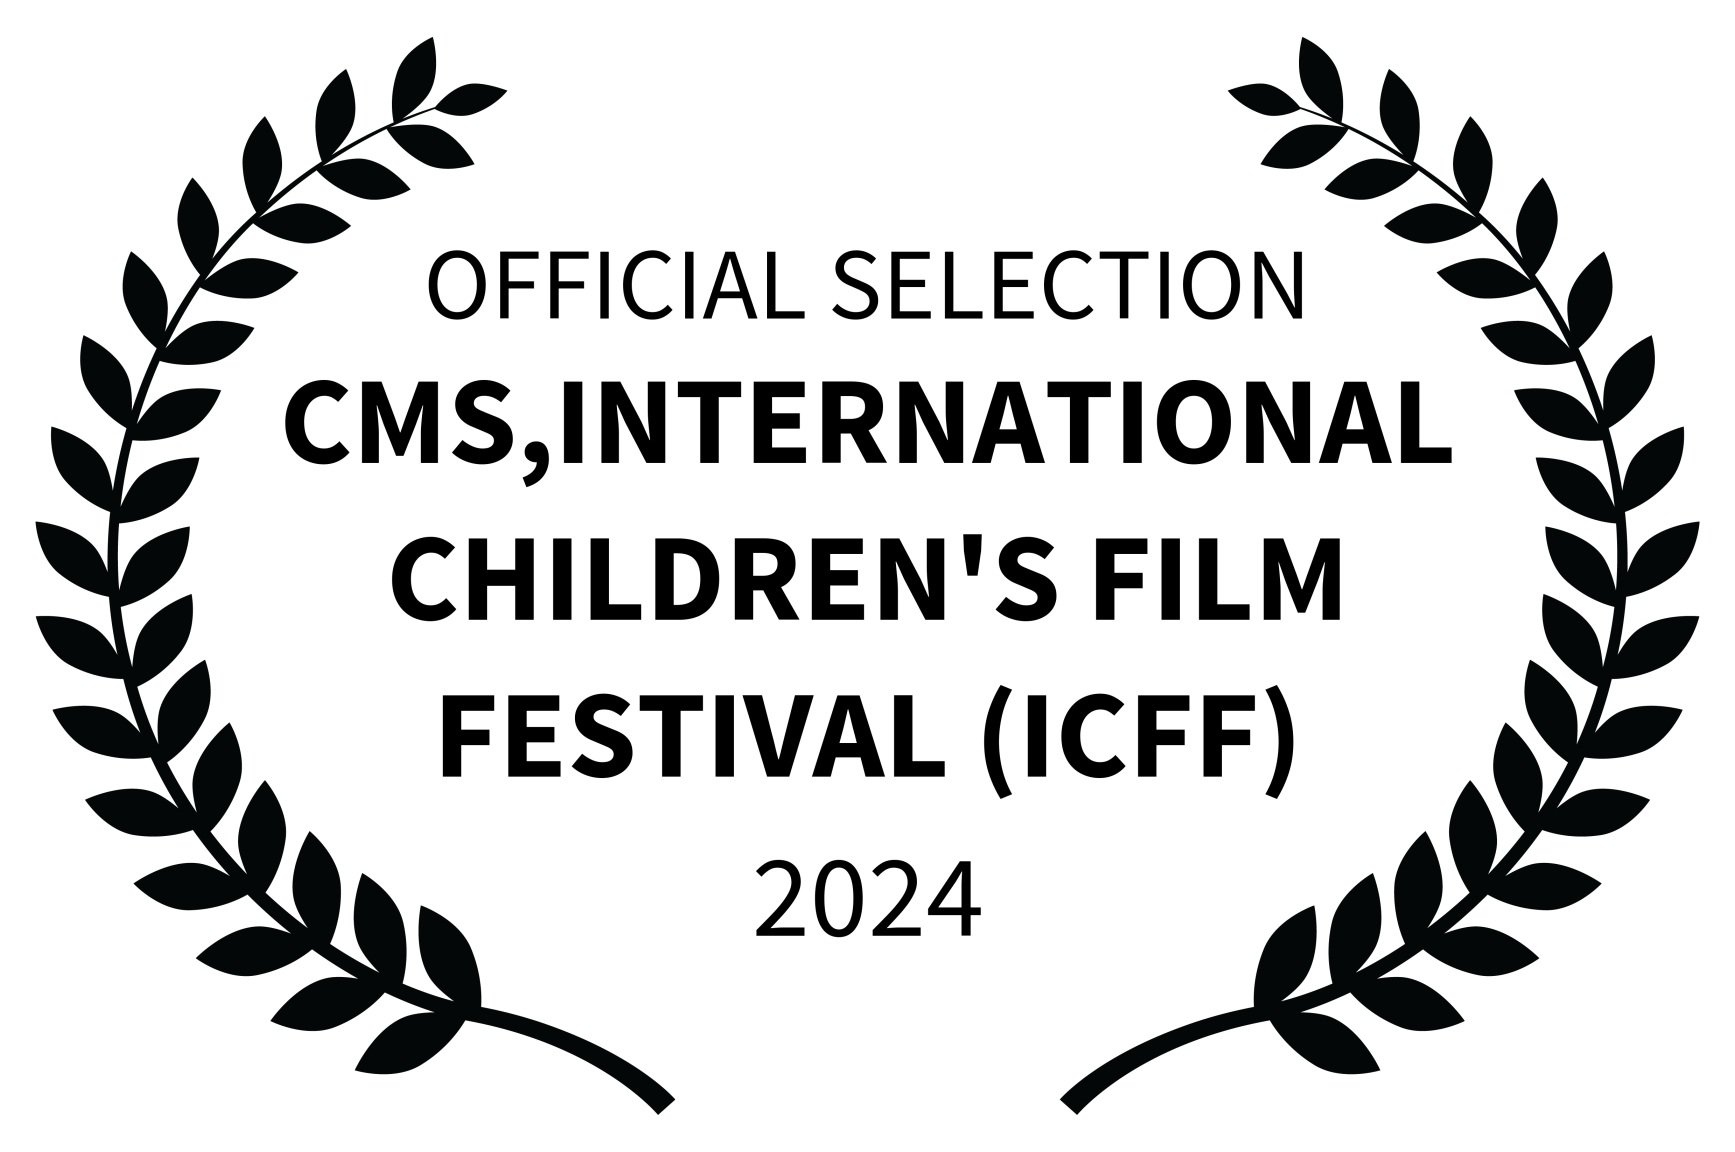 OFFICIAL+SELECTION+-+CMSINTERNATIONAL+CHILDRENS+FILM+FESTIVAL+ICFF+-+2024.jpg